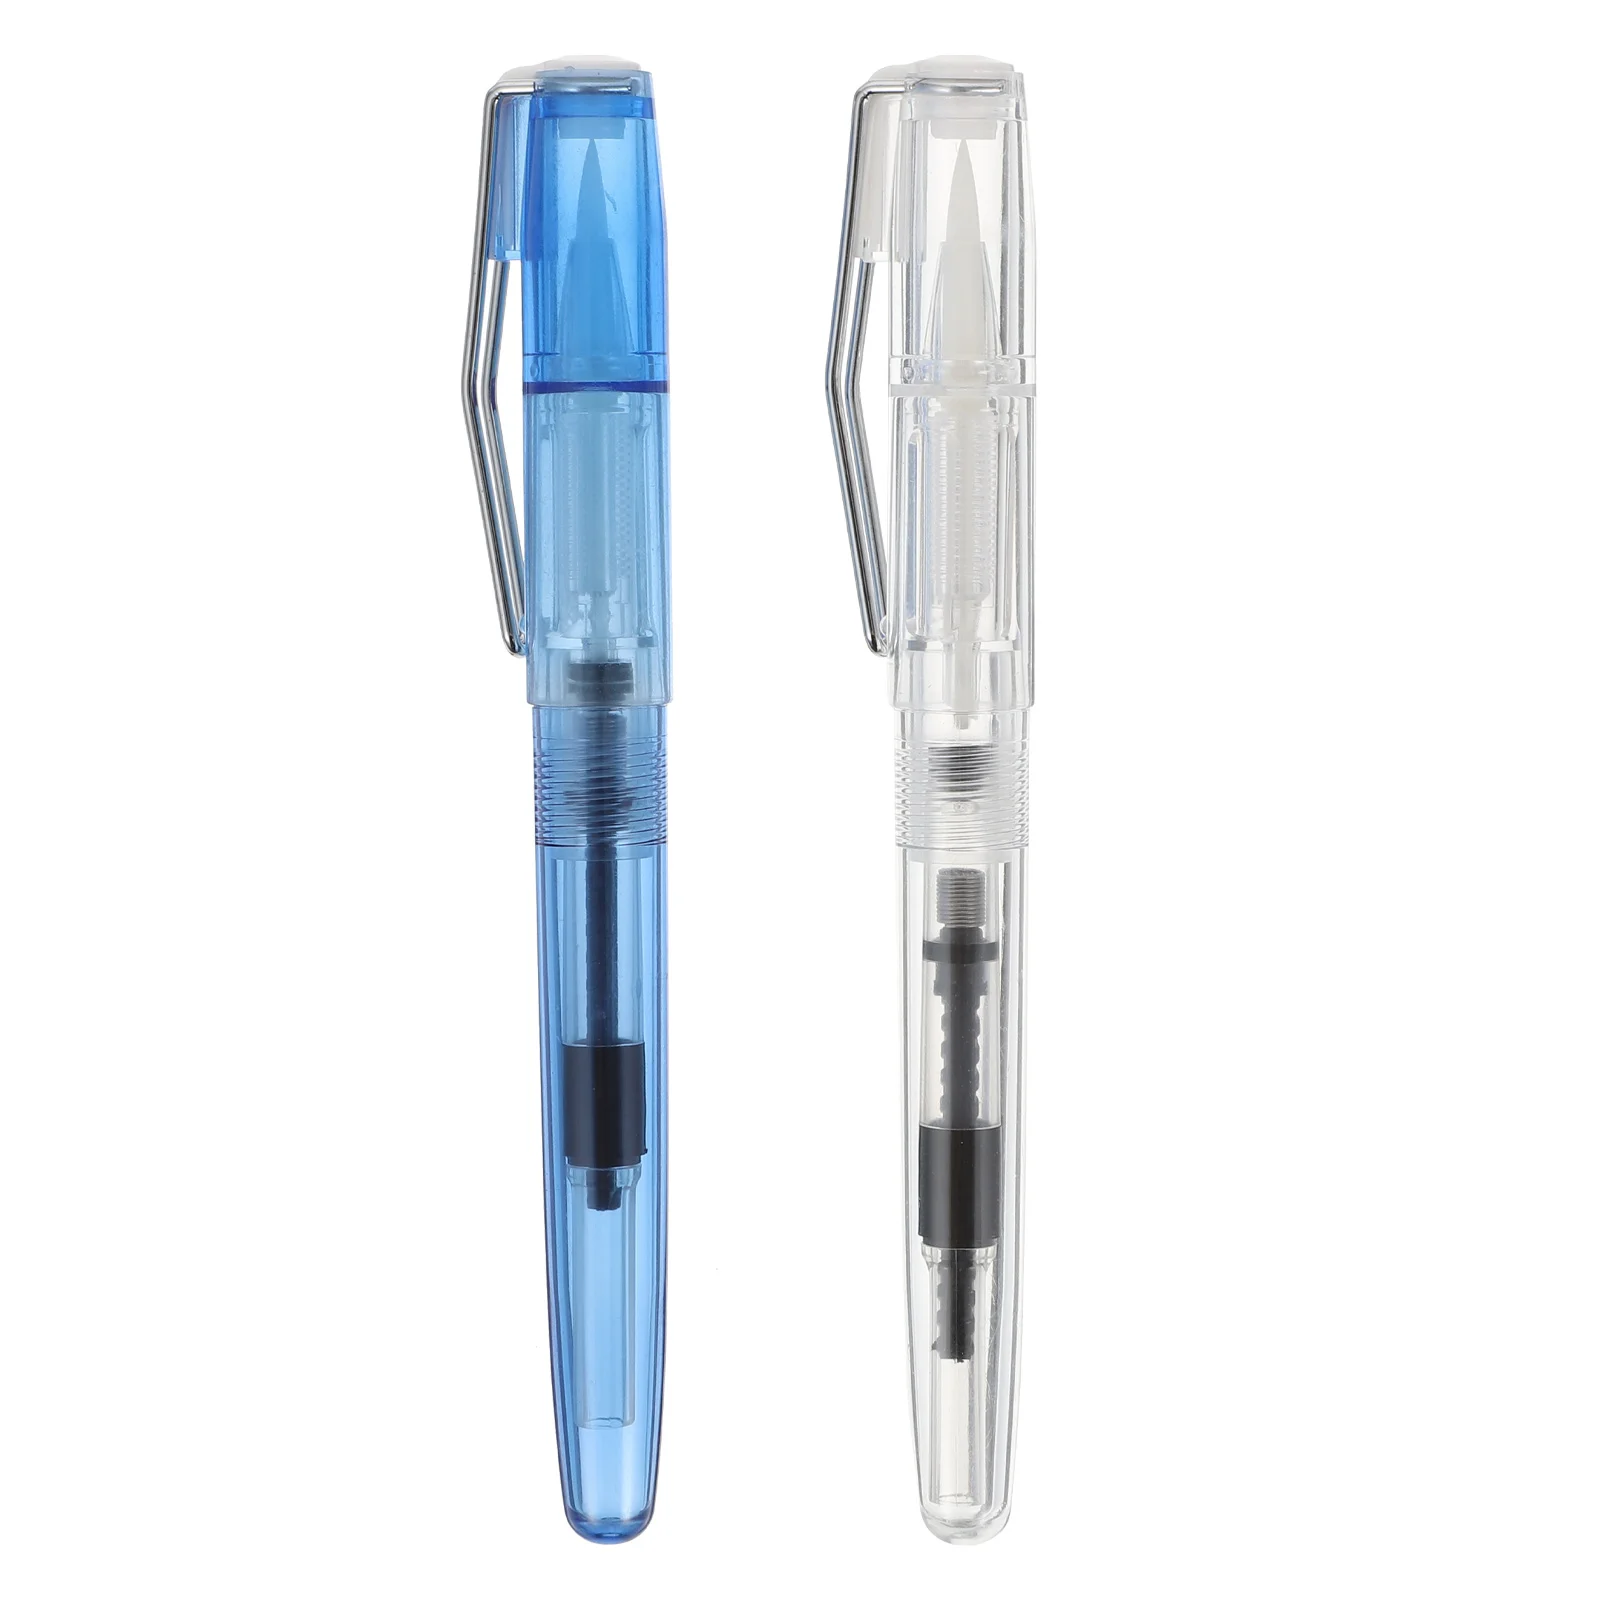 

Ручка перьевая многоразовая для рисования, набор из 2 пластиковых ручек с кисточкой для письма и каллиграфии, для студентов